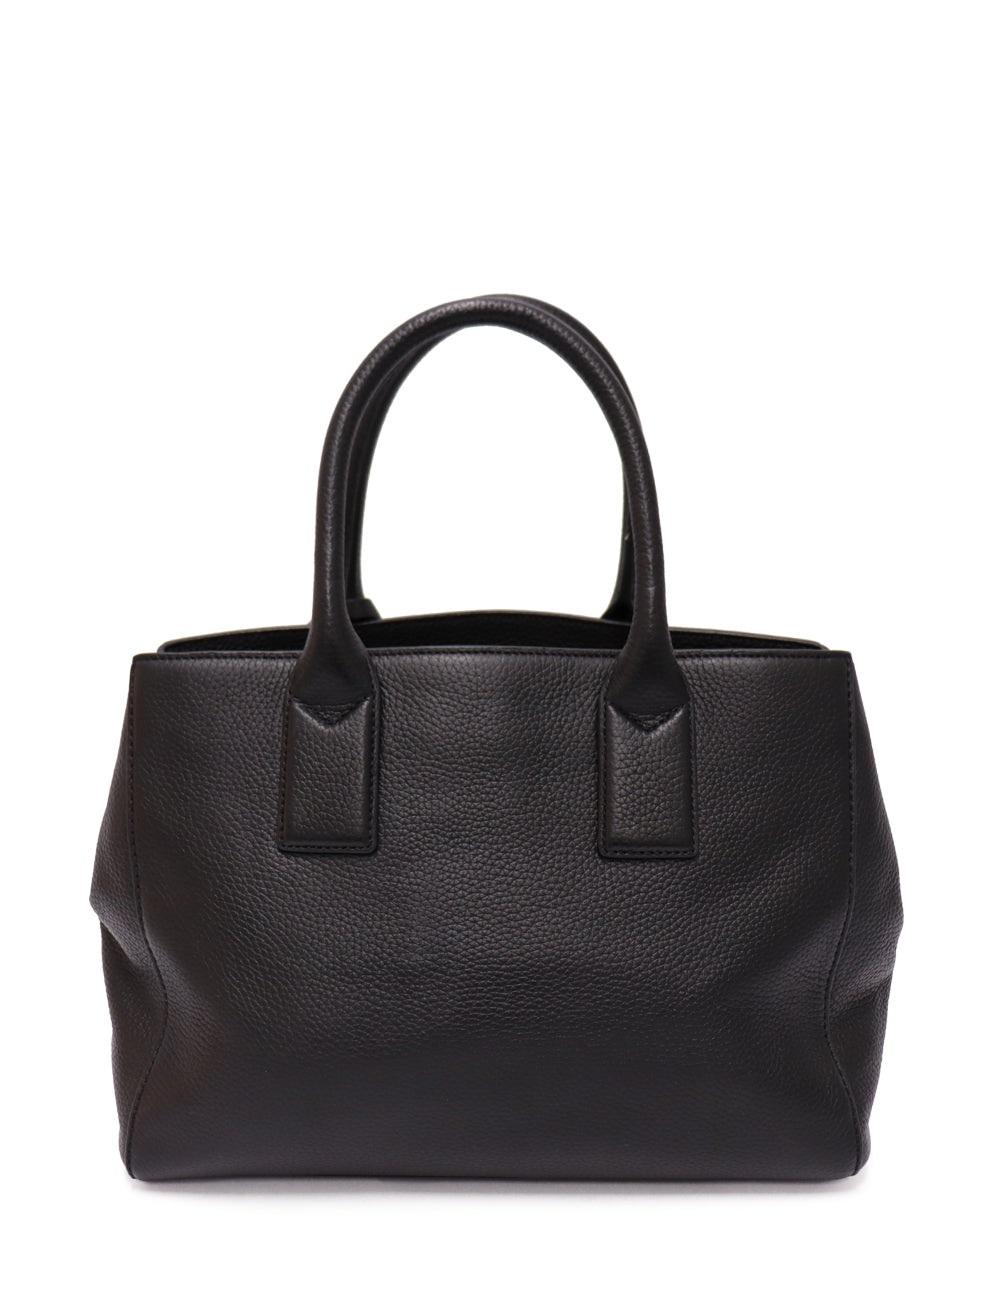 Women's Marc Jacobs Black Leather Shoulder Bag